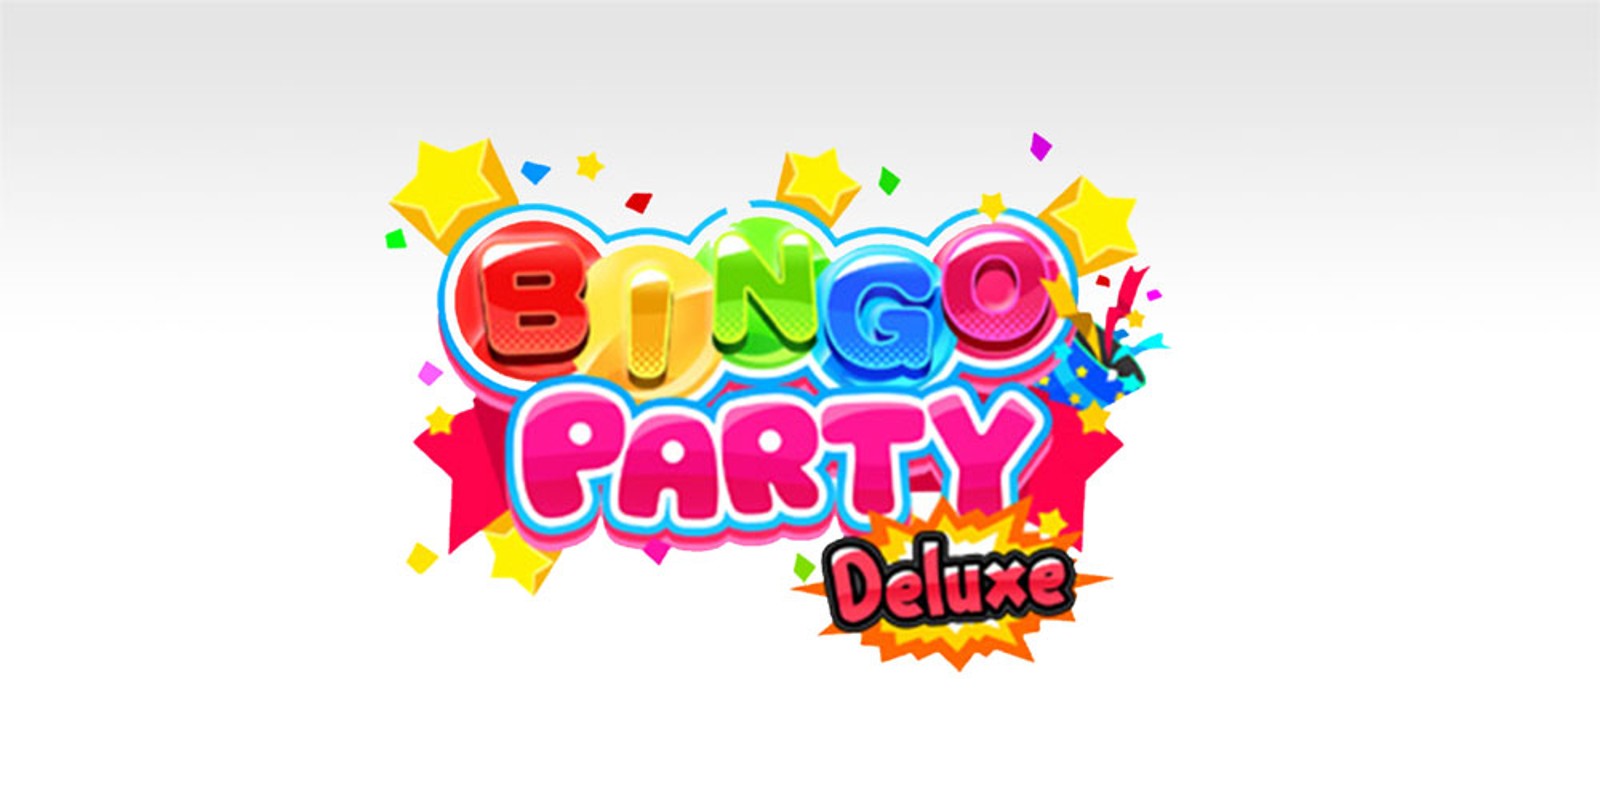 BINGO PARTY Deluxe